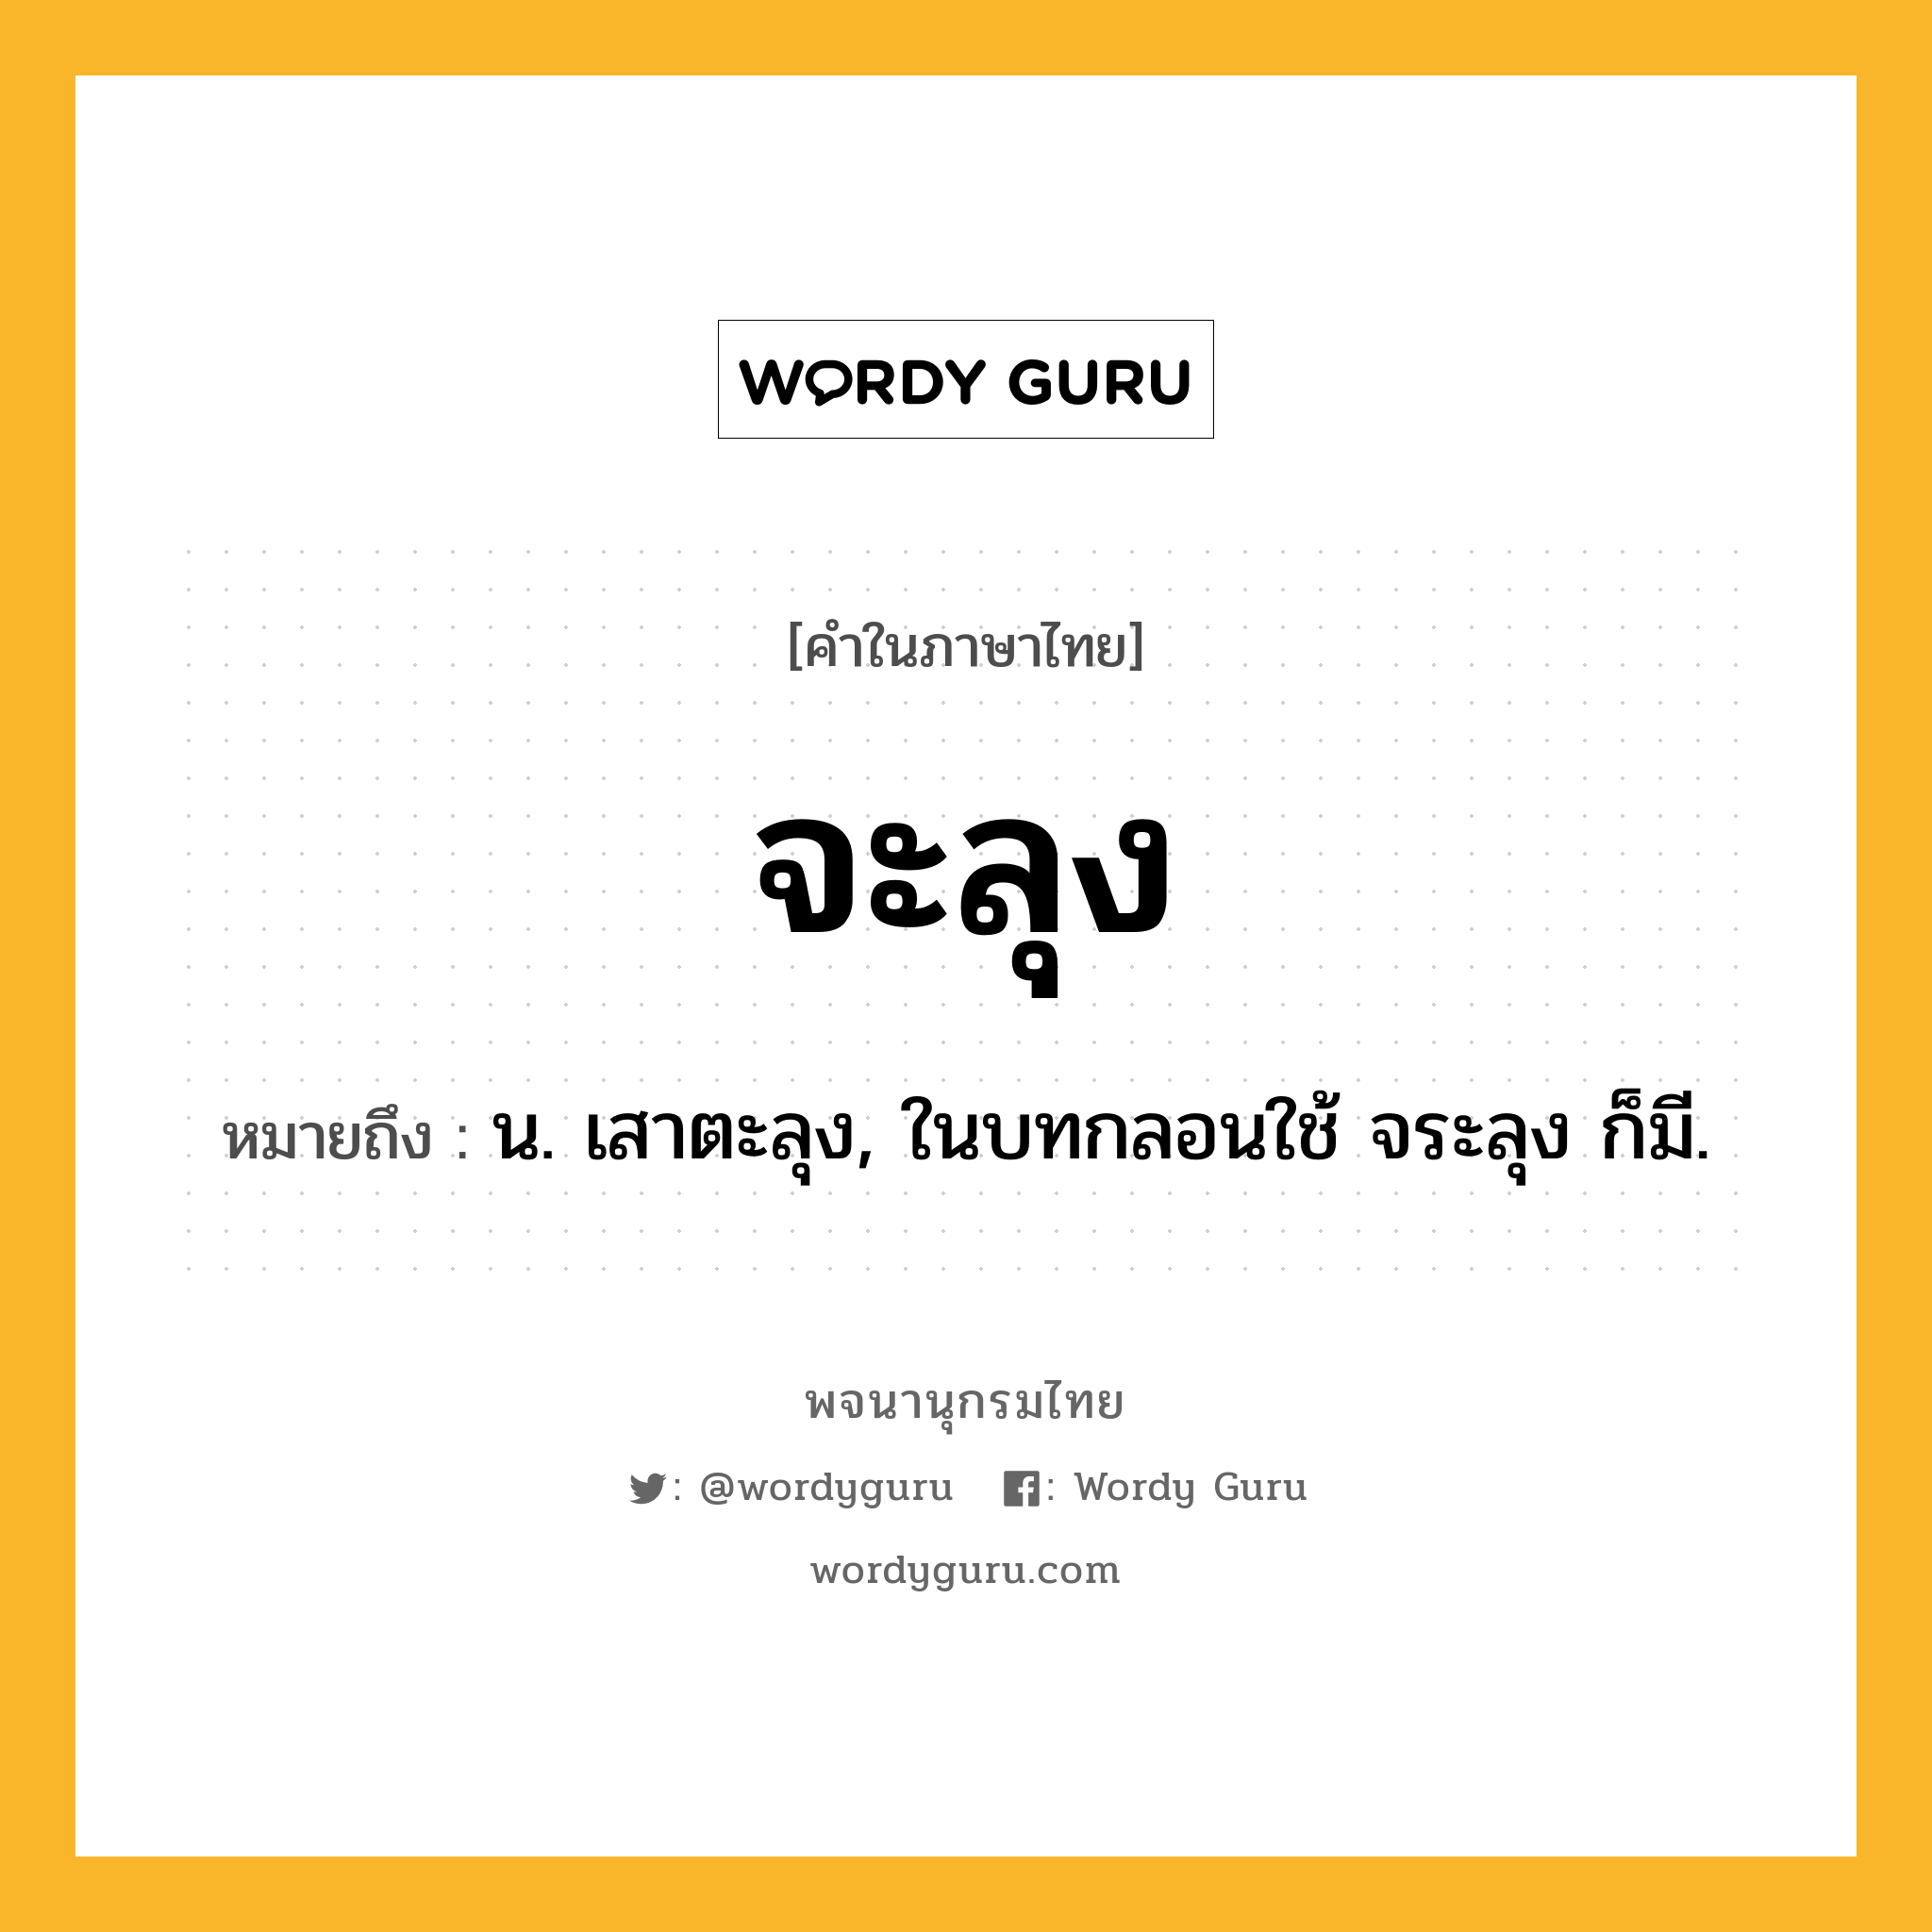 จะลุง ความหมาย หมายถึงอะไร?, คำในภาษาไทย จะลุง หมายถึง น. เสาตะลุง, ในบทกลอนใช้ จระลุง ก็มี.